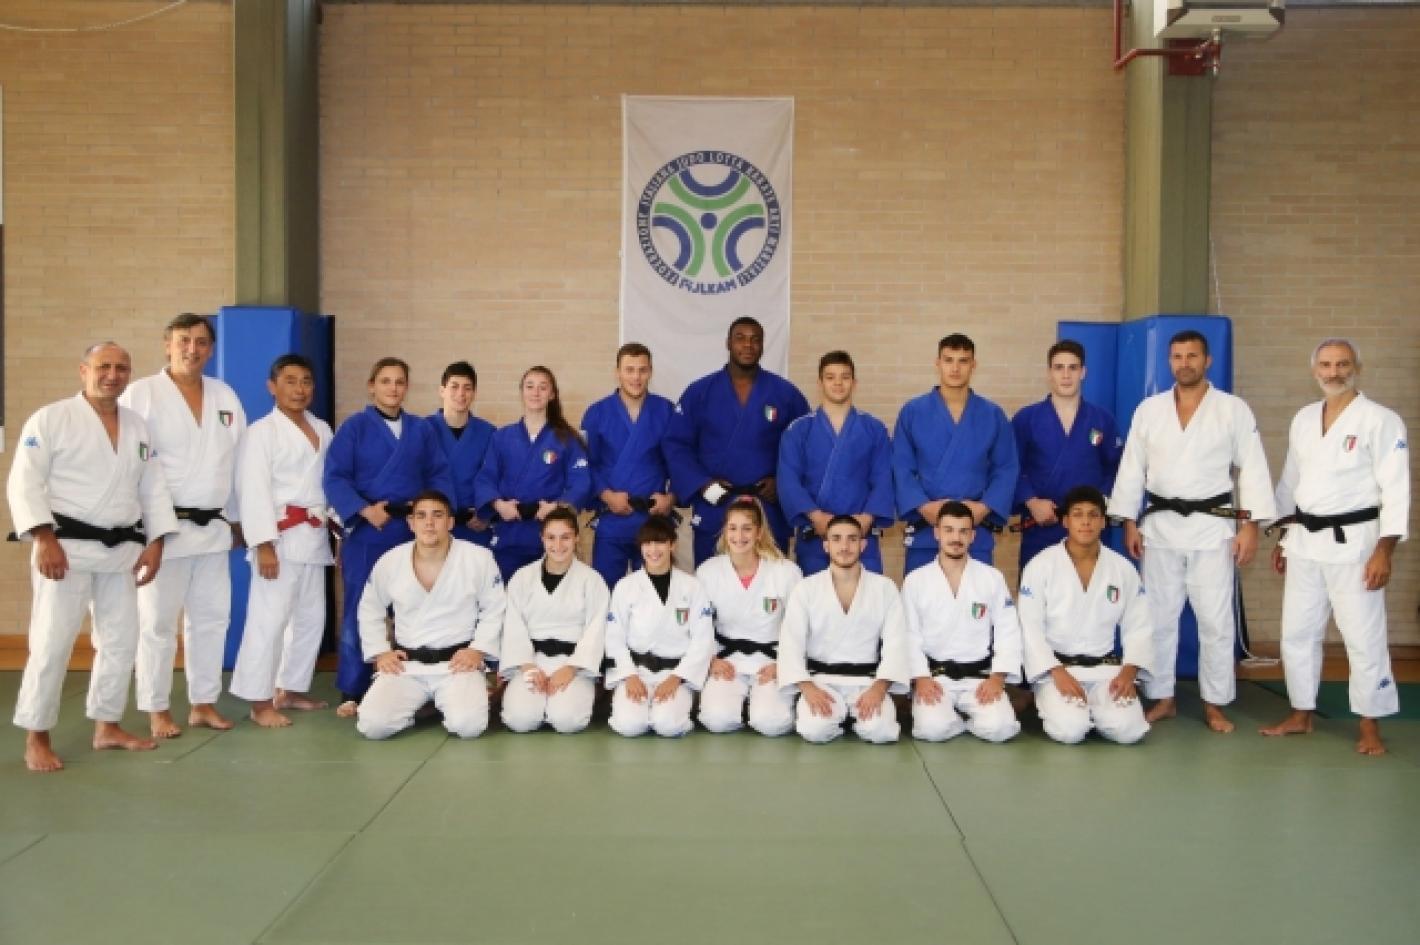 images/veneto/Judo/2019/medium/2019_squadra_junior_ai_mondiali.jpeg